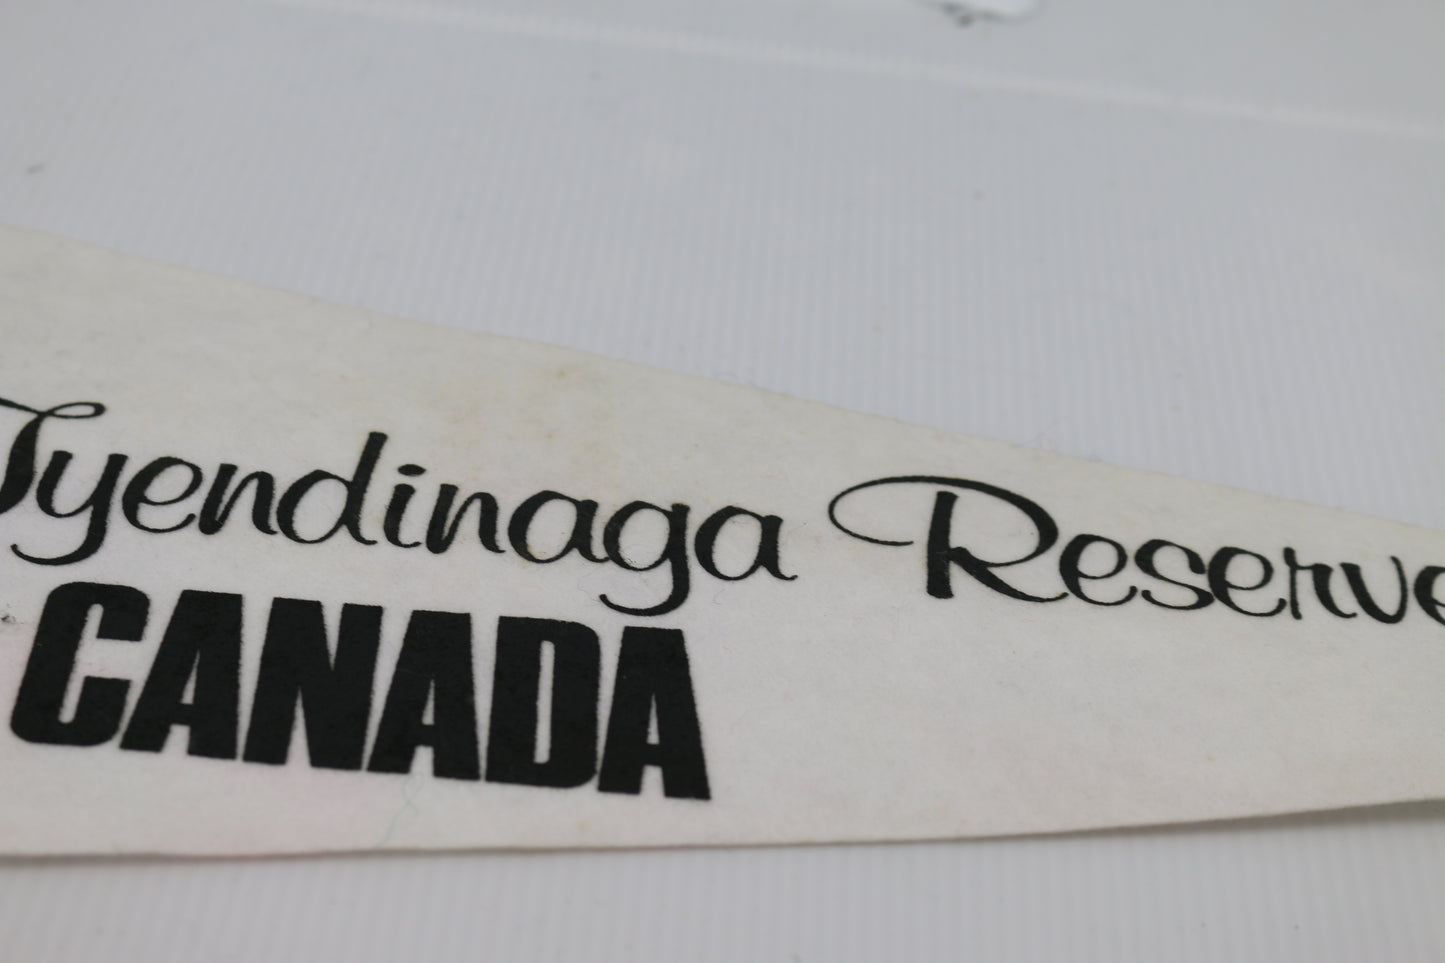 Vintage Souvenir Felt Pennant Lyendinaga Reserve Canada Indian Chief logo